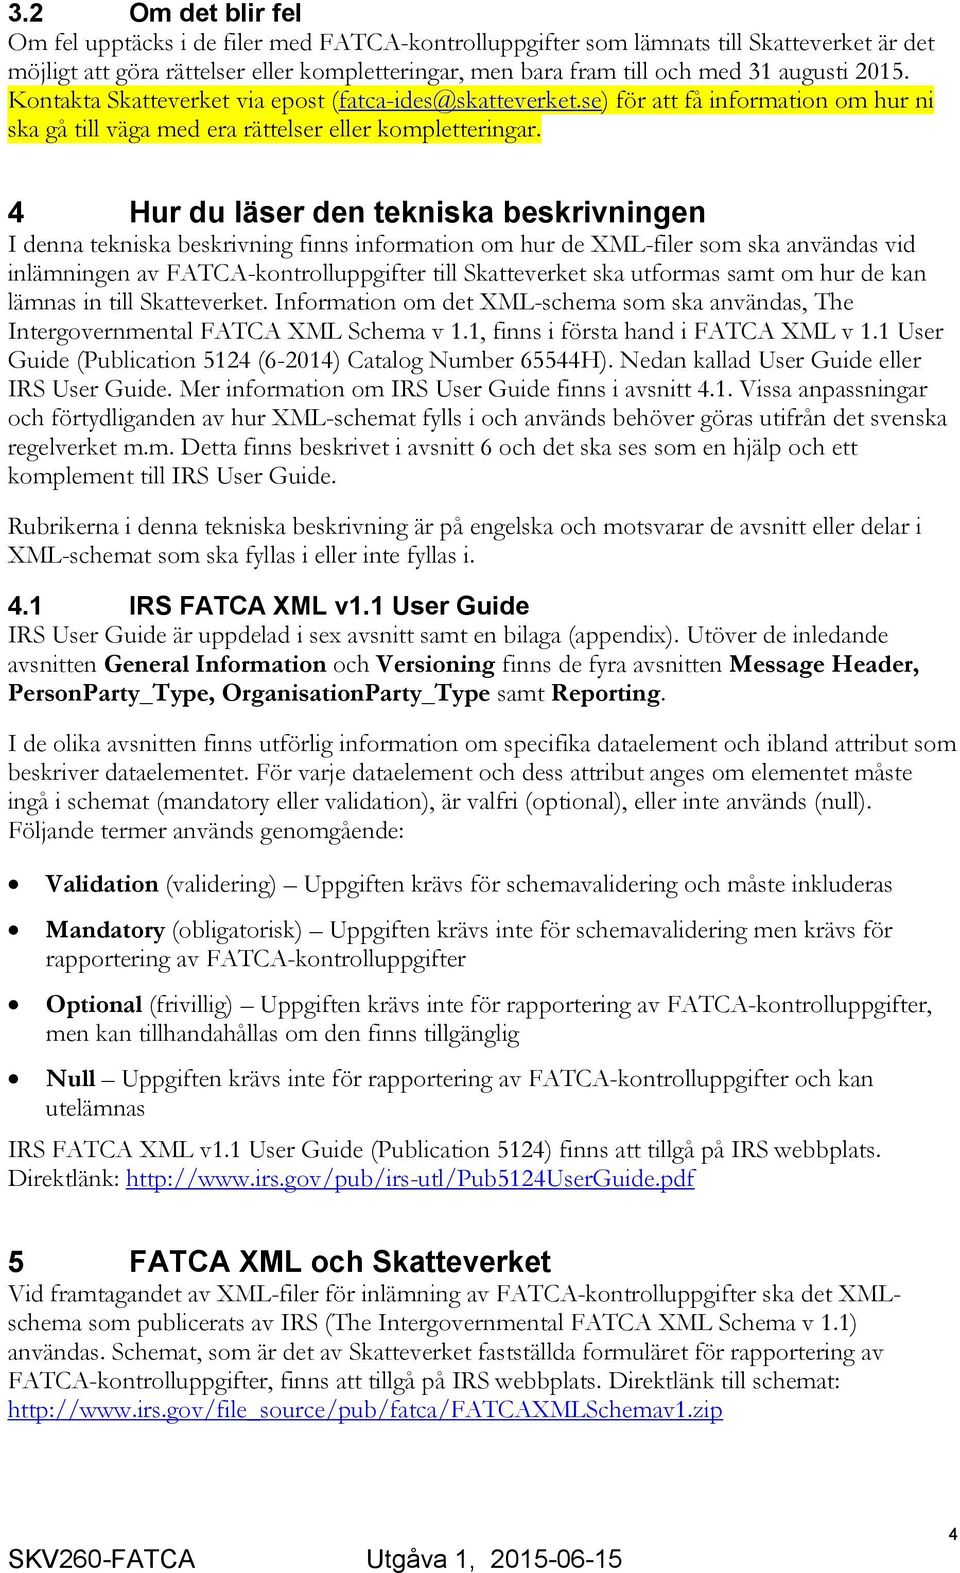 4 Hur du läser den tekniska beskrivningen I denna tekniska beskrivning finns information om hur de XML-filer som ska användas vid inlämningen av FATCA-kontrolluppgifter till Skatteverket ska utformas